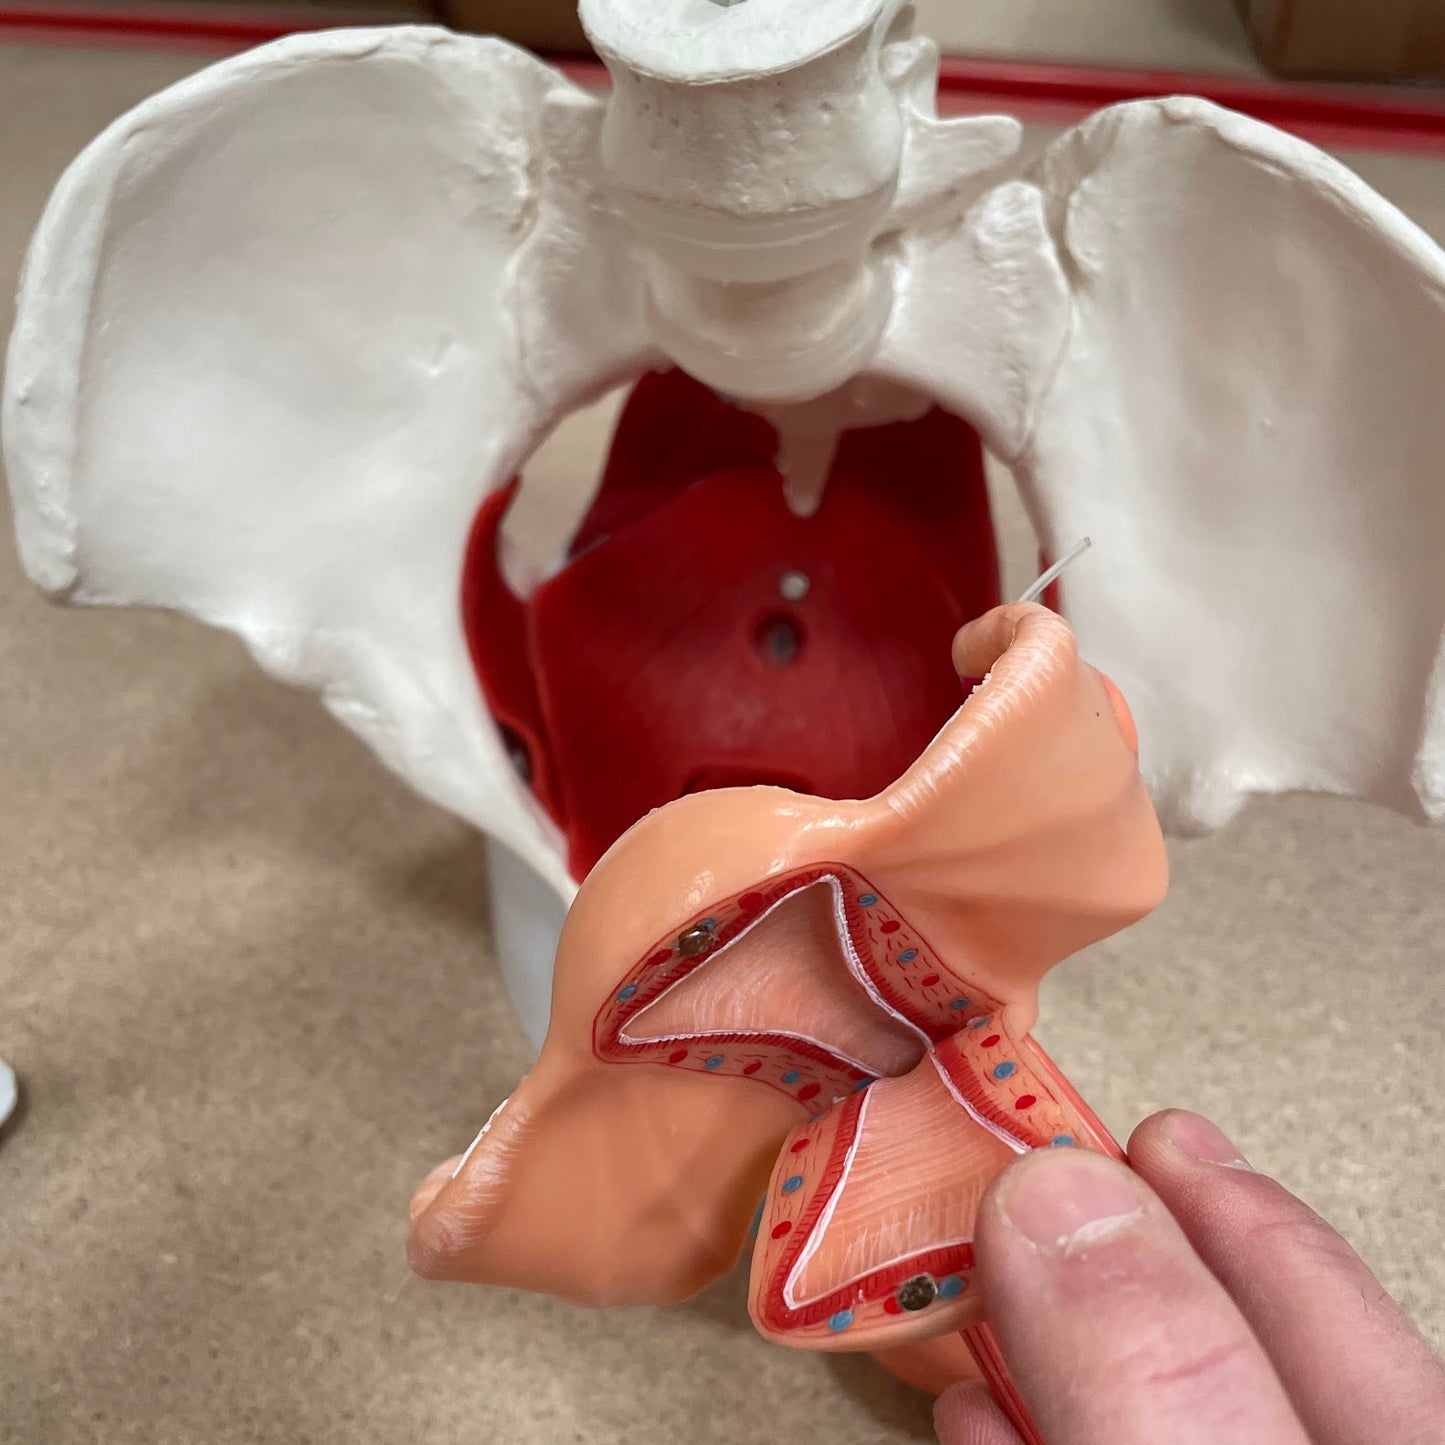 Bækkenmodel der viser bækkenbunden, de indre og ydre køns-organer samt blæren hos kvinden